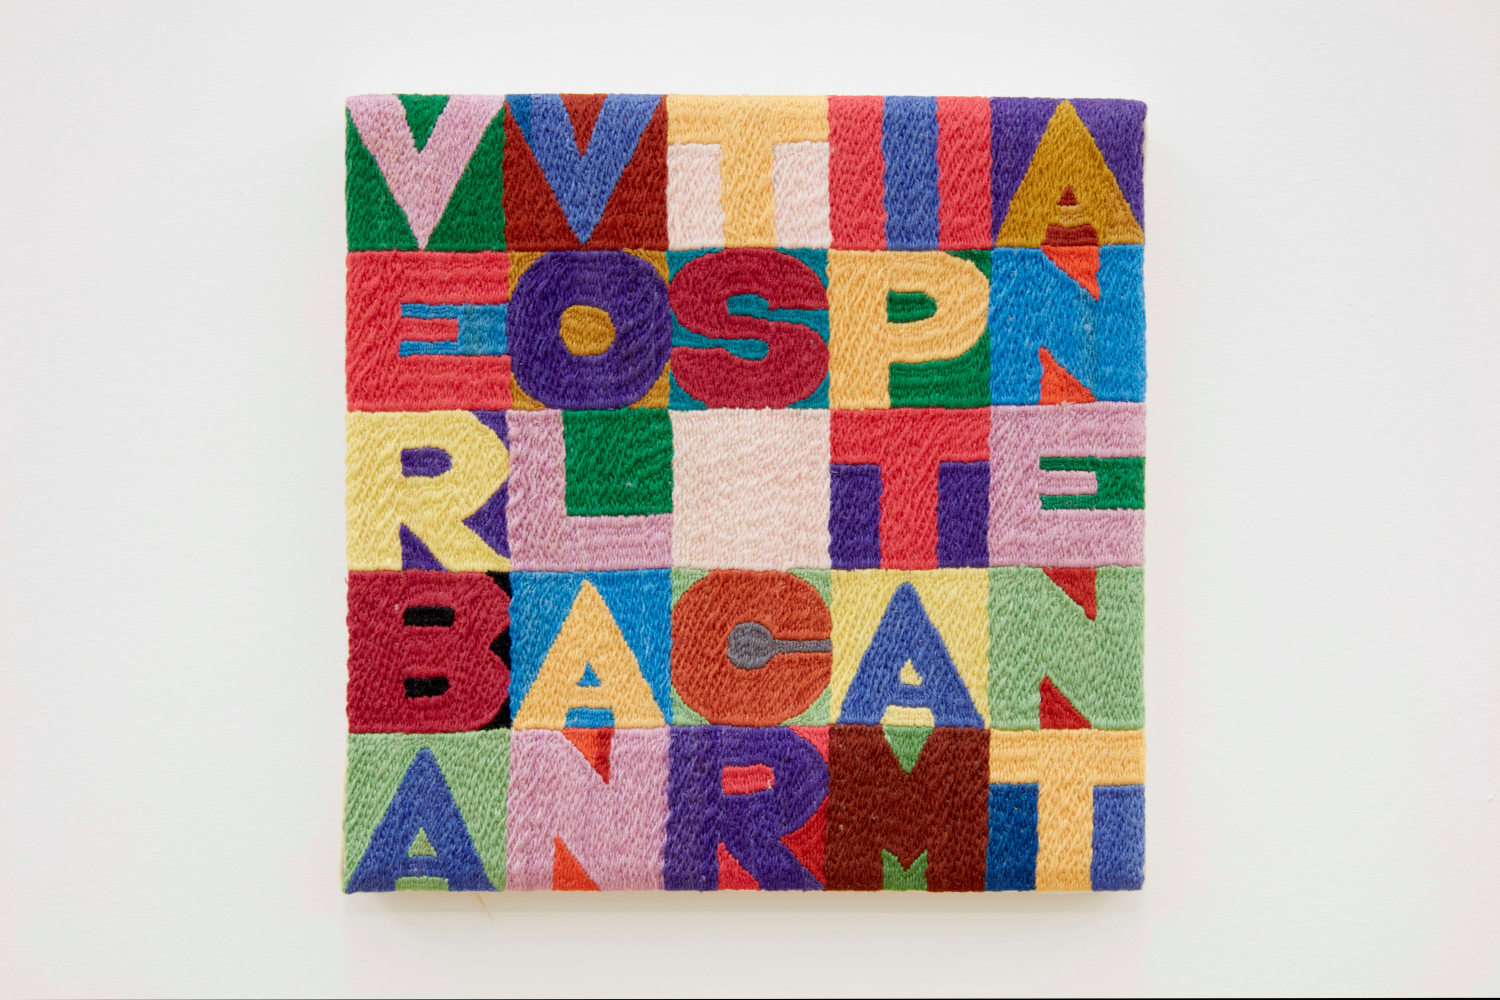 Alighiero e Boetti

Verba volant scripta manent, 1988

cotton thread embroidery on linen

8 1/2 x 8 1/2 inches (21.6 x 21.6 cm)